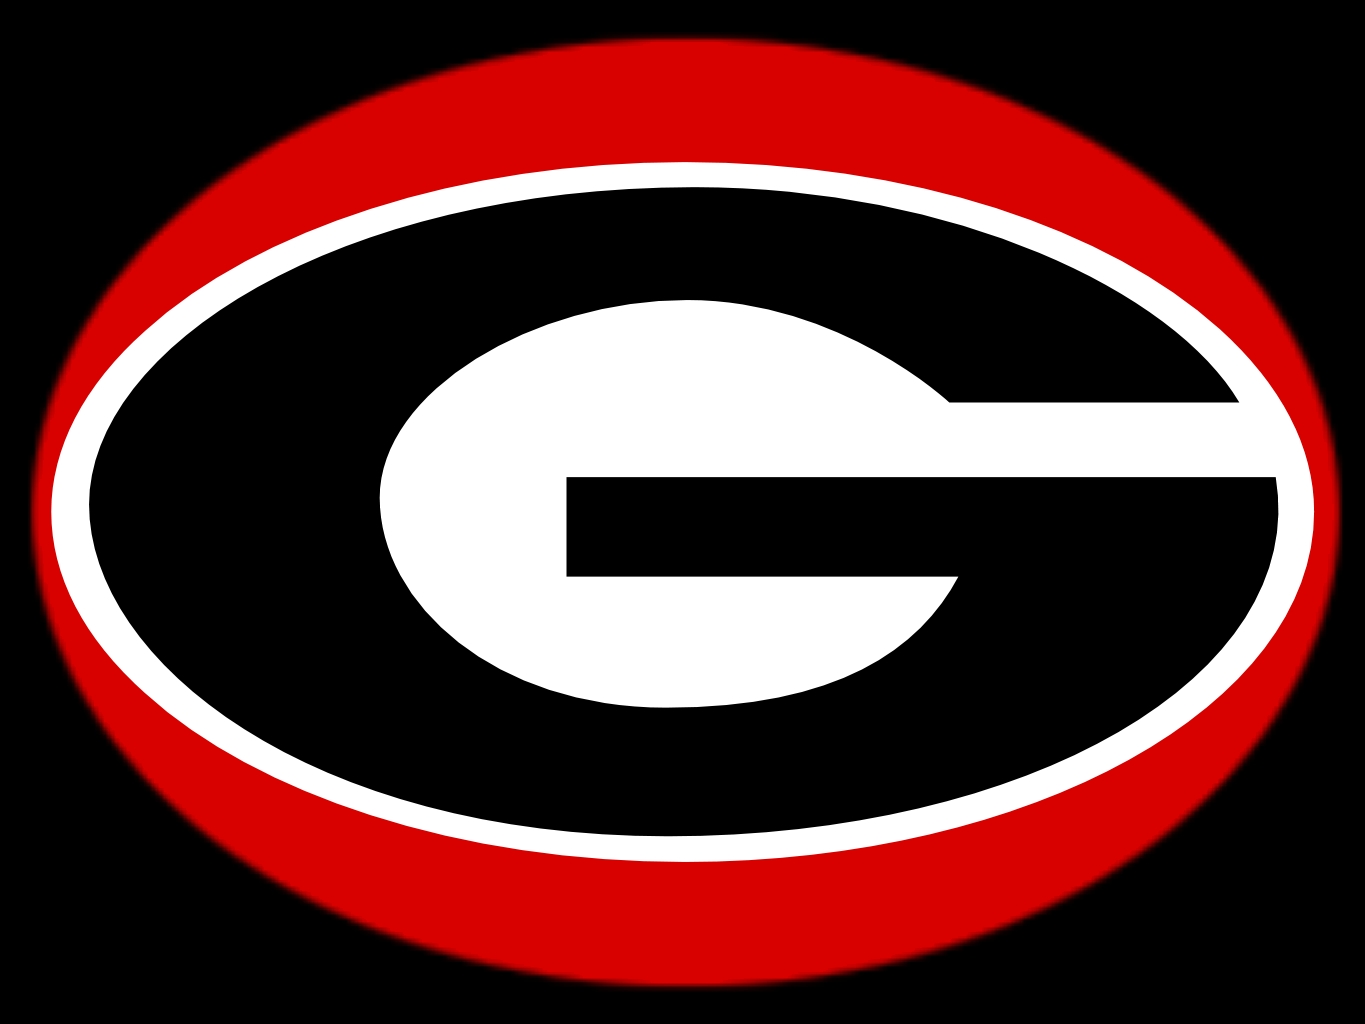 Georgia Bulldogs #6